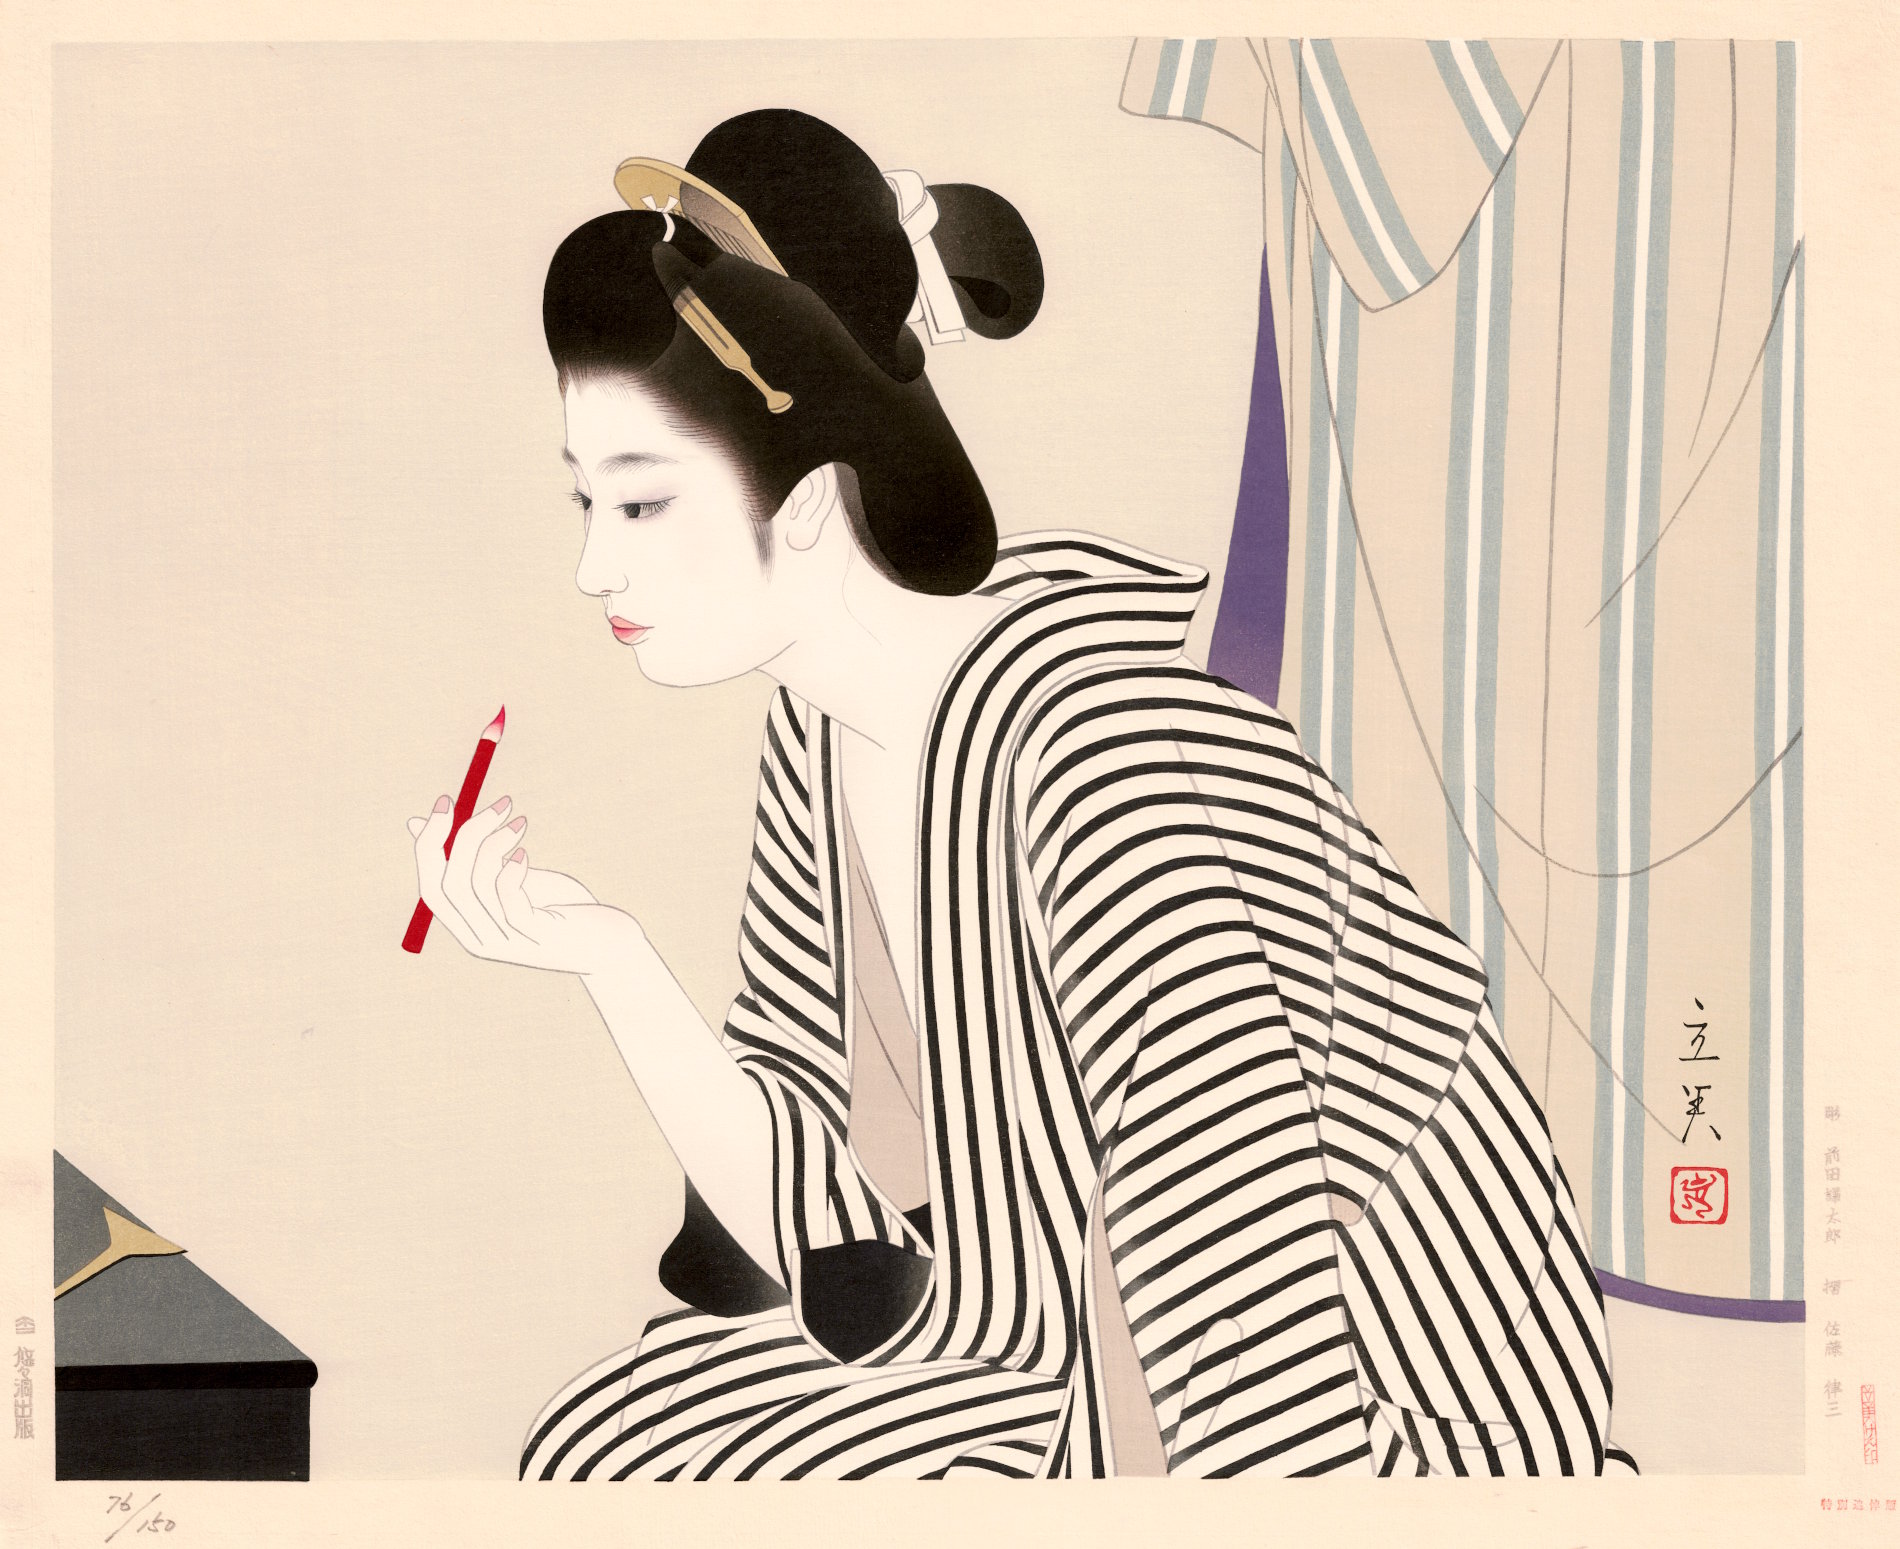 Tatsumi Shimura “Kuchibeni (Lipstick)” 1978 woodblock print